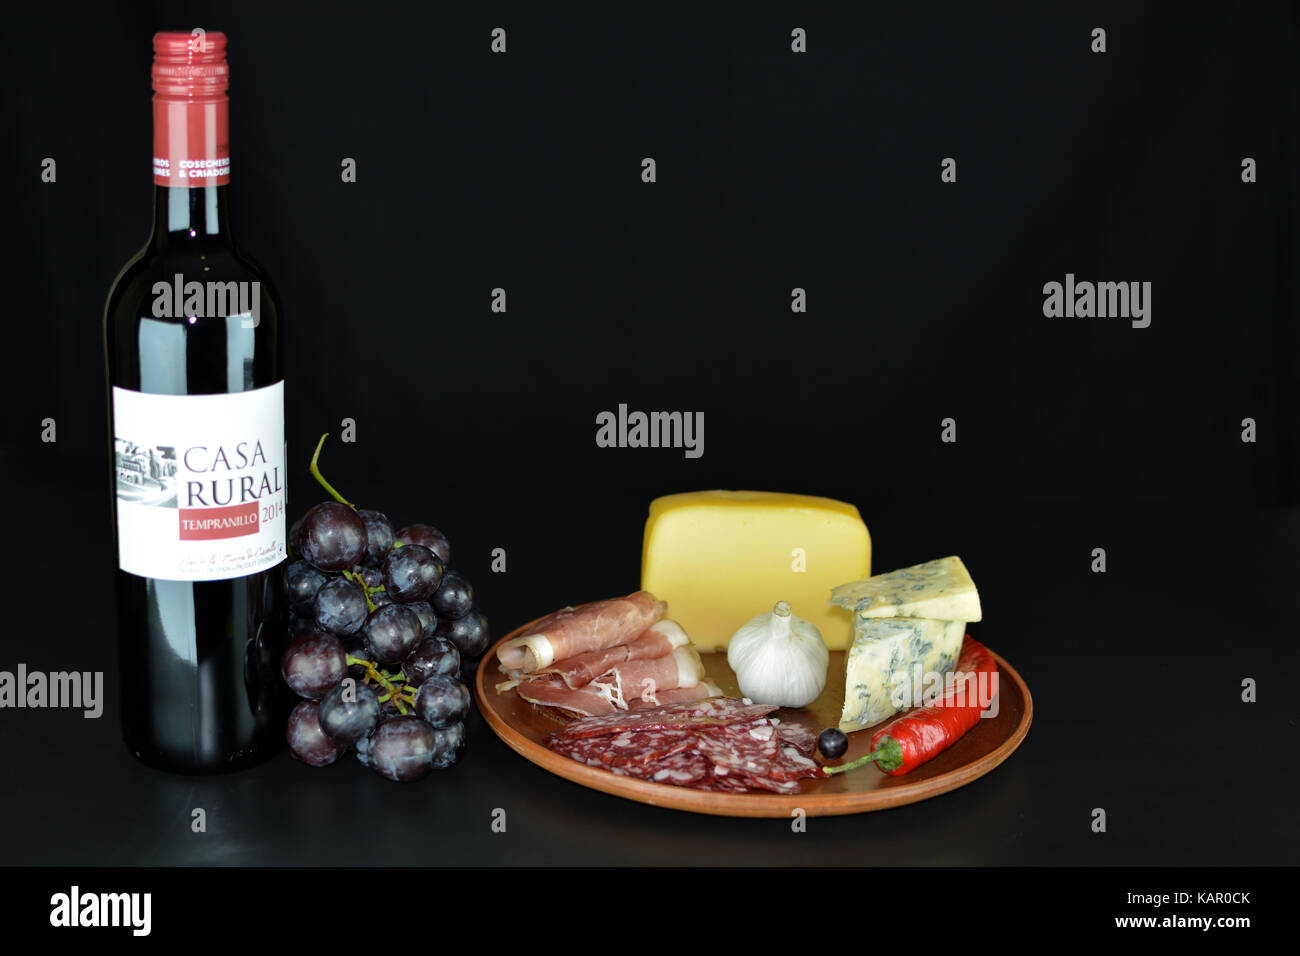 Primorskoe, Ukraine - 4 août 2016 : vin rouge espagnol de 2014 'casa rural' tempranillo' , un tas de raisins rouges, fromage bleu, proshto, de salami, de l'ail Banque D'Images